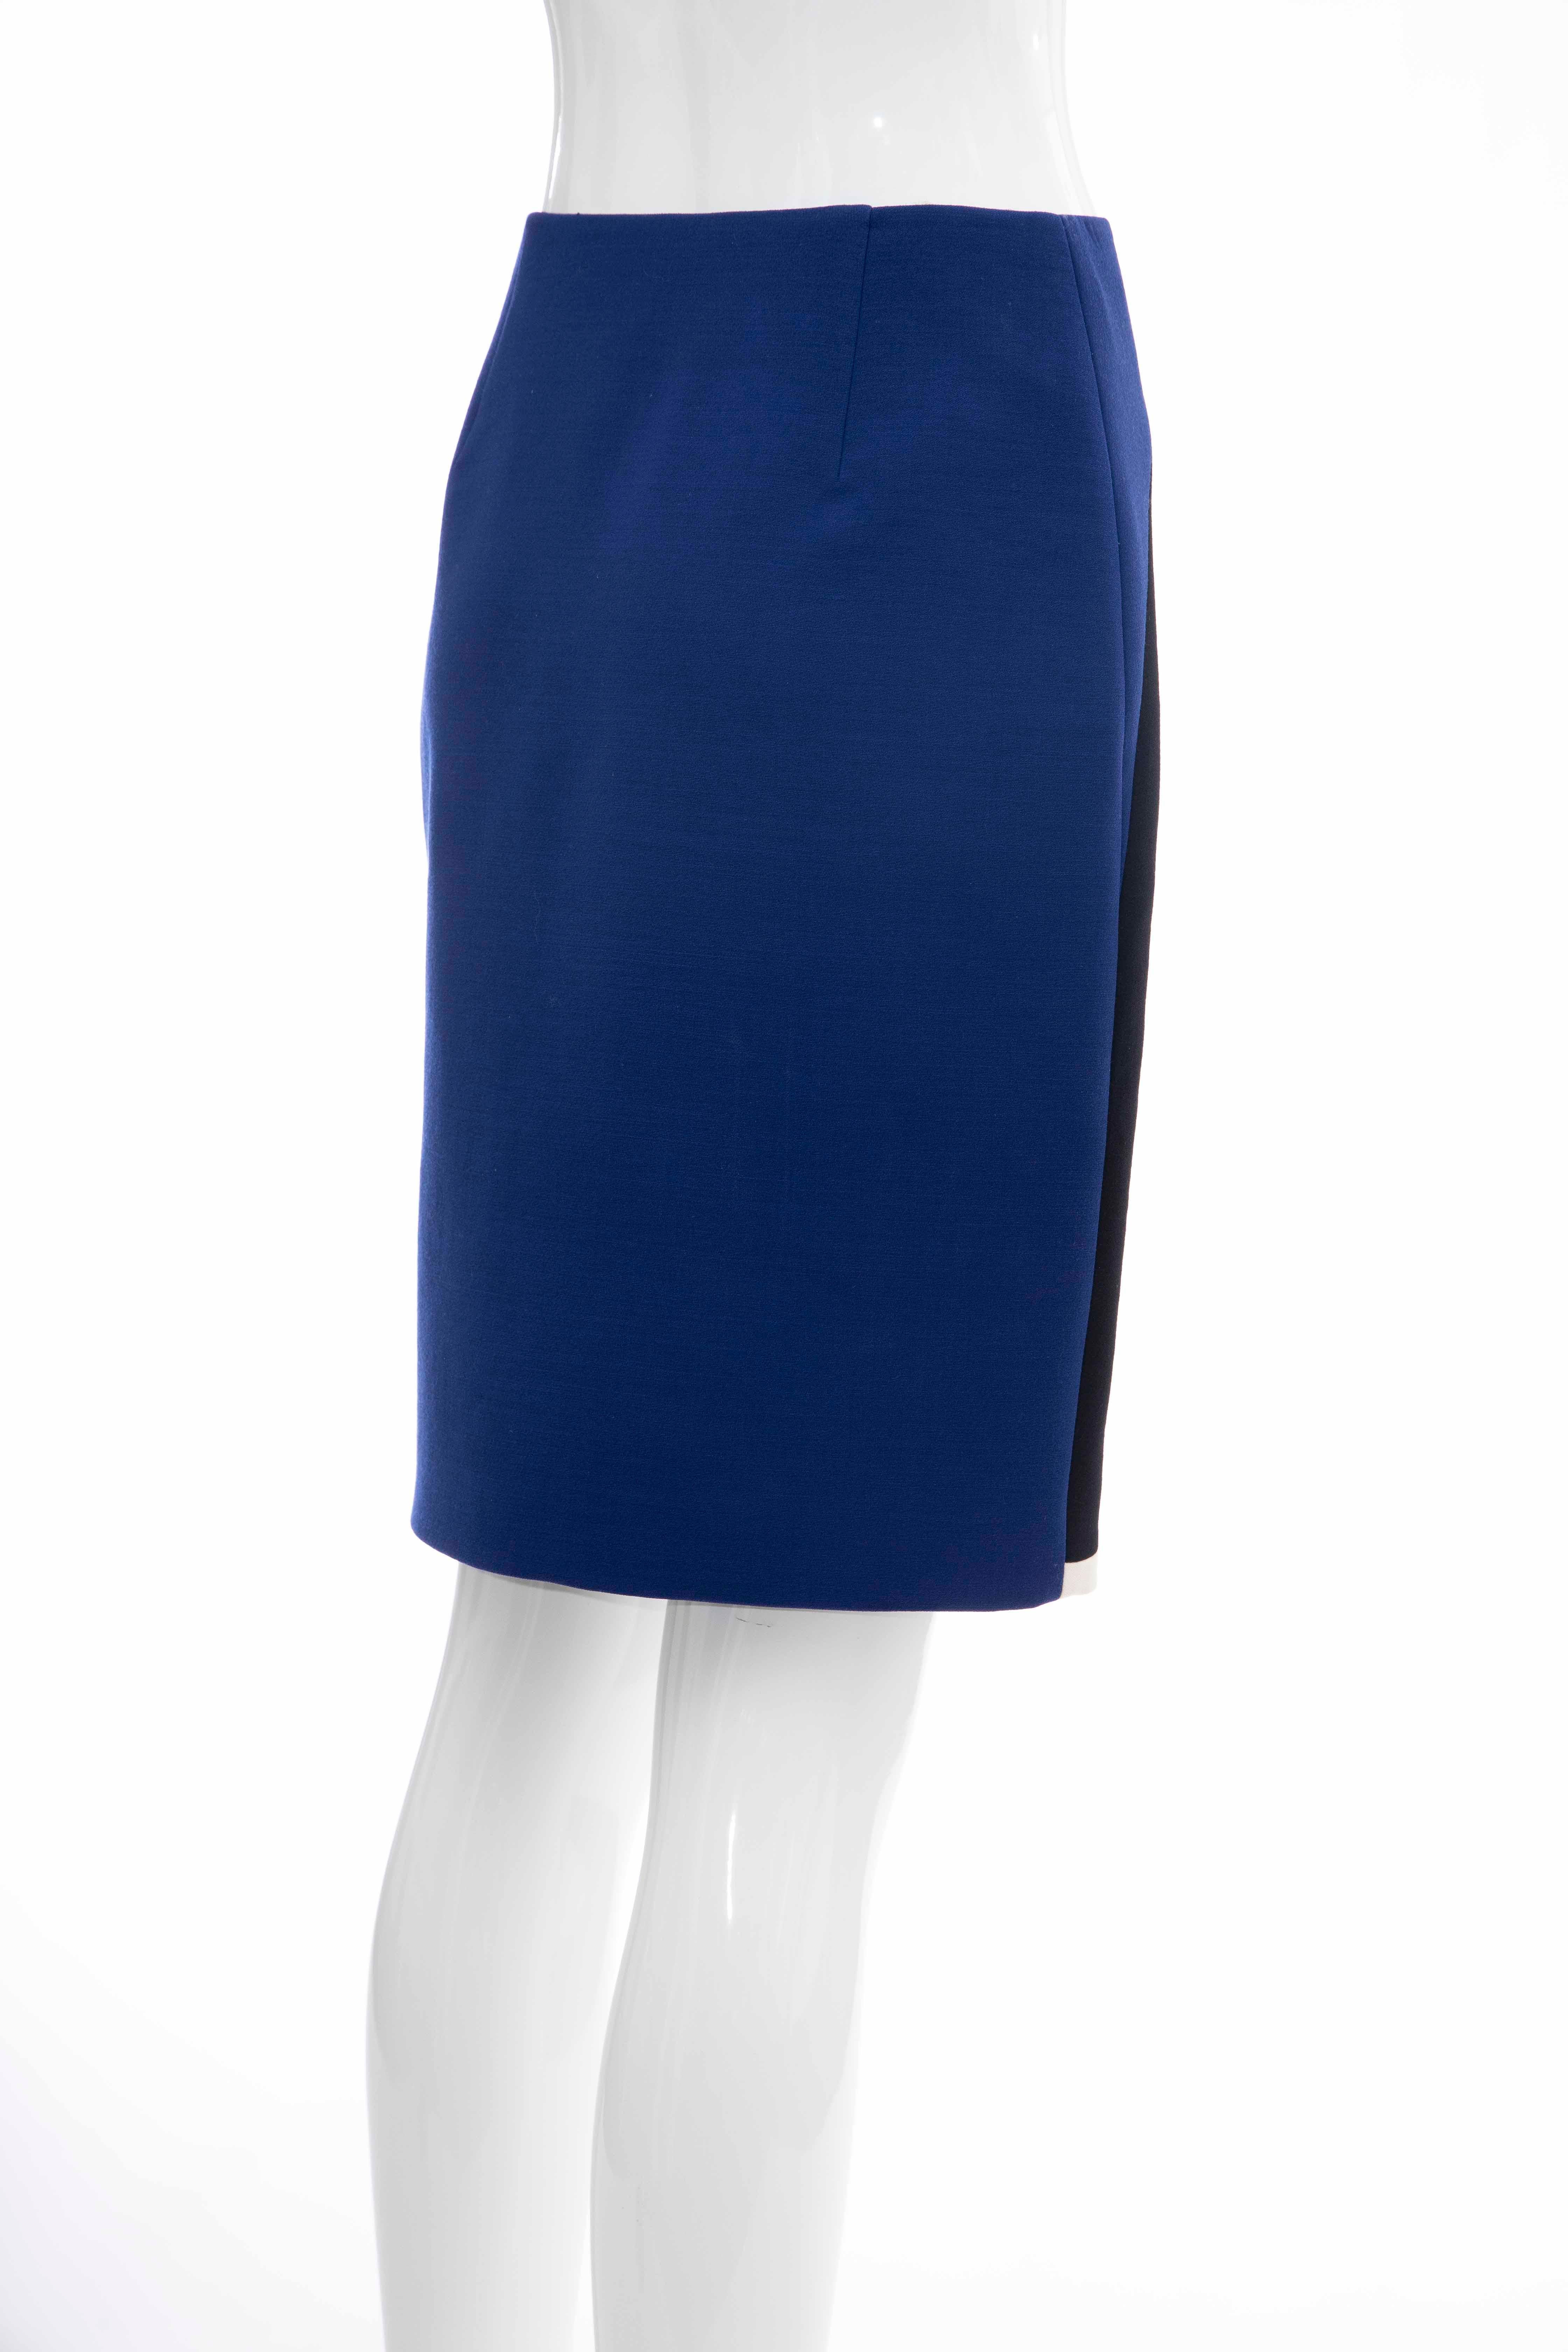 Prada Runway Virgin Wool Silk Bead Embroidery Pencil Skirt, Spring 2014 For Sale 2